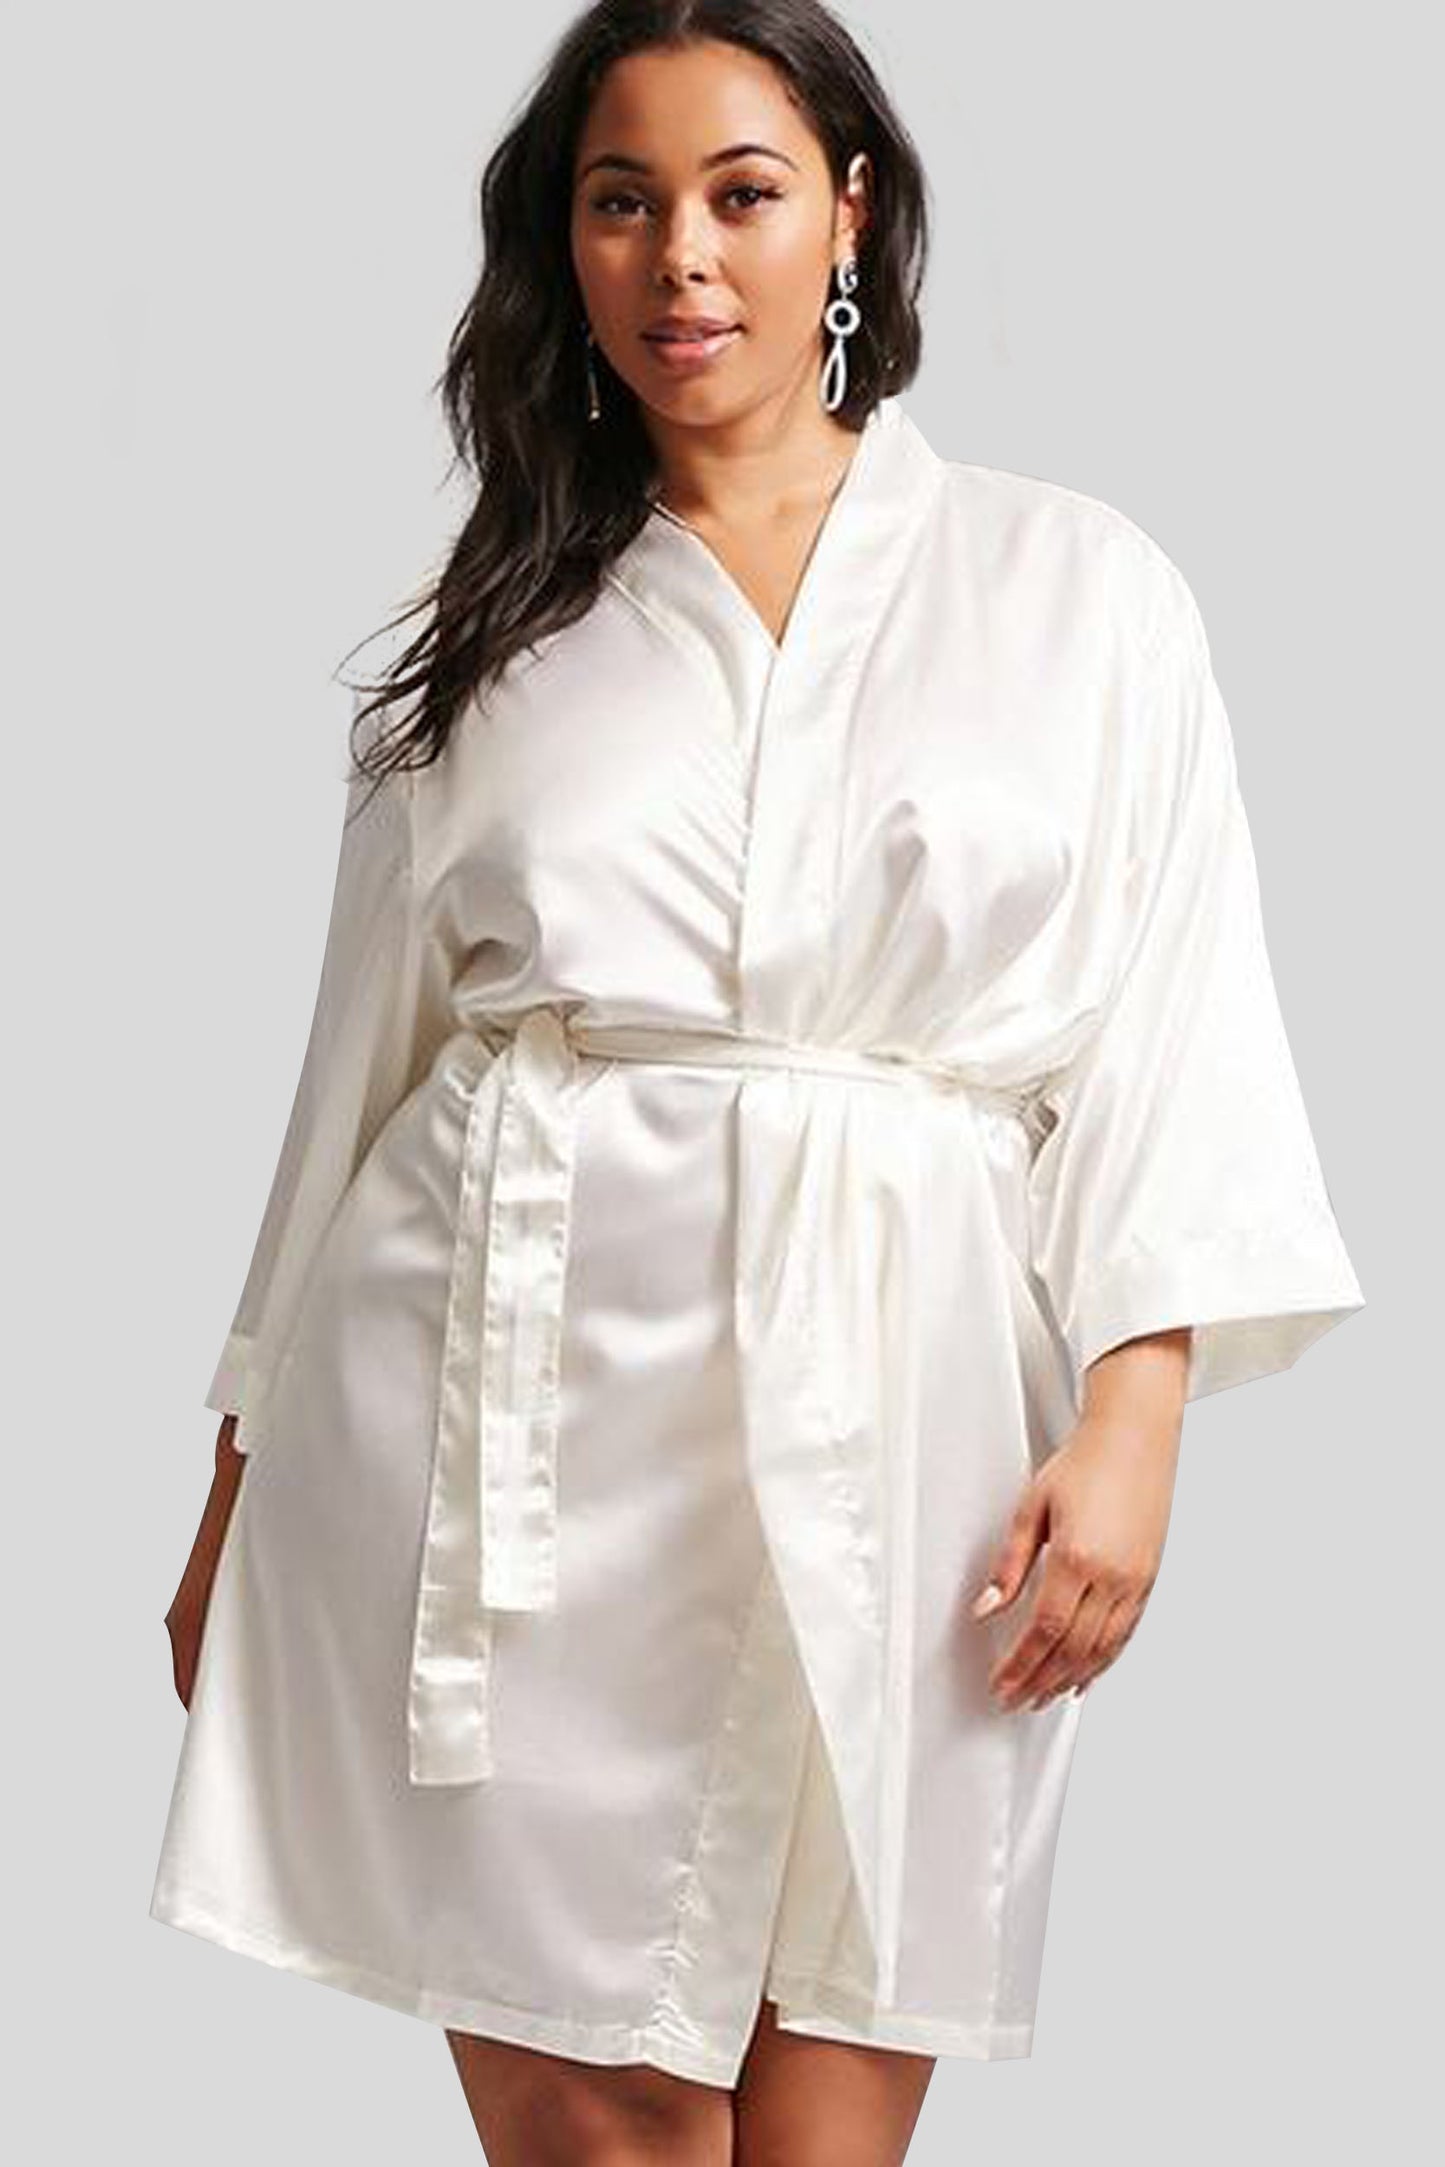 Ivory Satin Kimono Robe Plus Size - Bridal & Bridesmaid Robes Wedding Gift - Bridal Gift - Bridesmaid Gift - Kimono Robe - Satin Robe - Kimono Satin Robe - PrettyRobes